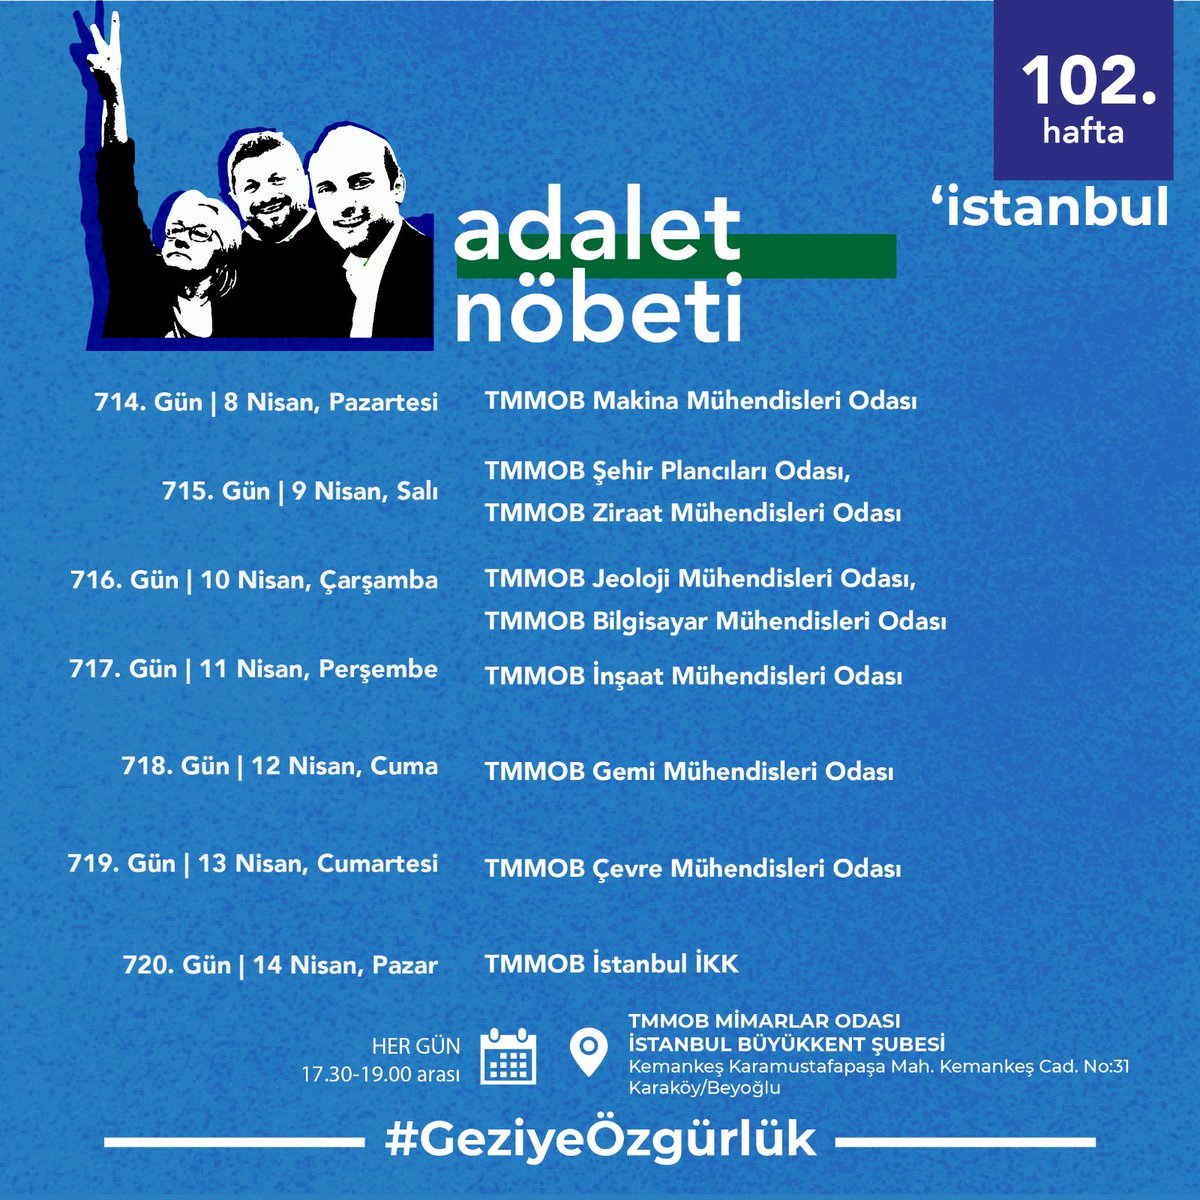 102. Hafta | İstanbul Adalet Nöbeti’nin nöbet programı 🗓 Her gün ⏰ 17.30-19.00 📍 TMMOB Mimarlar Odası İstanbul Büyükkent Şubesi #GeziyeÖzgürlük #GeziyiSavunuyoruz